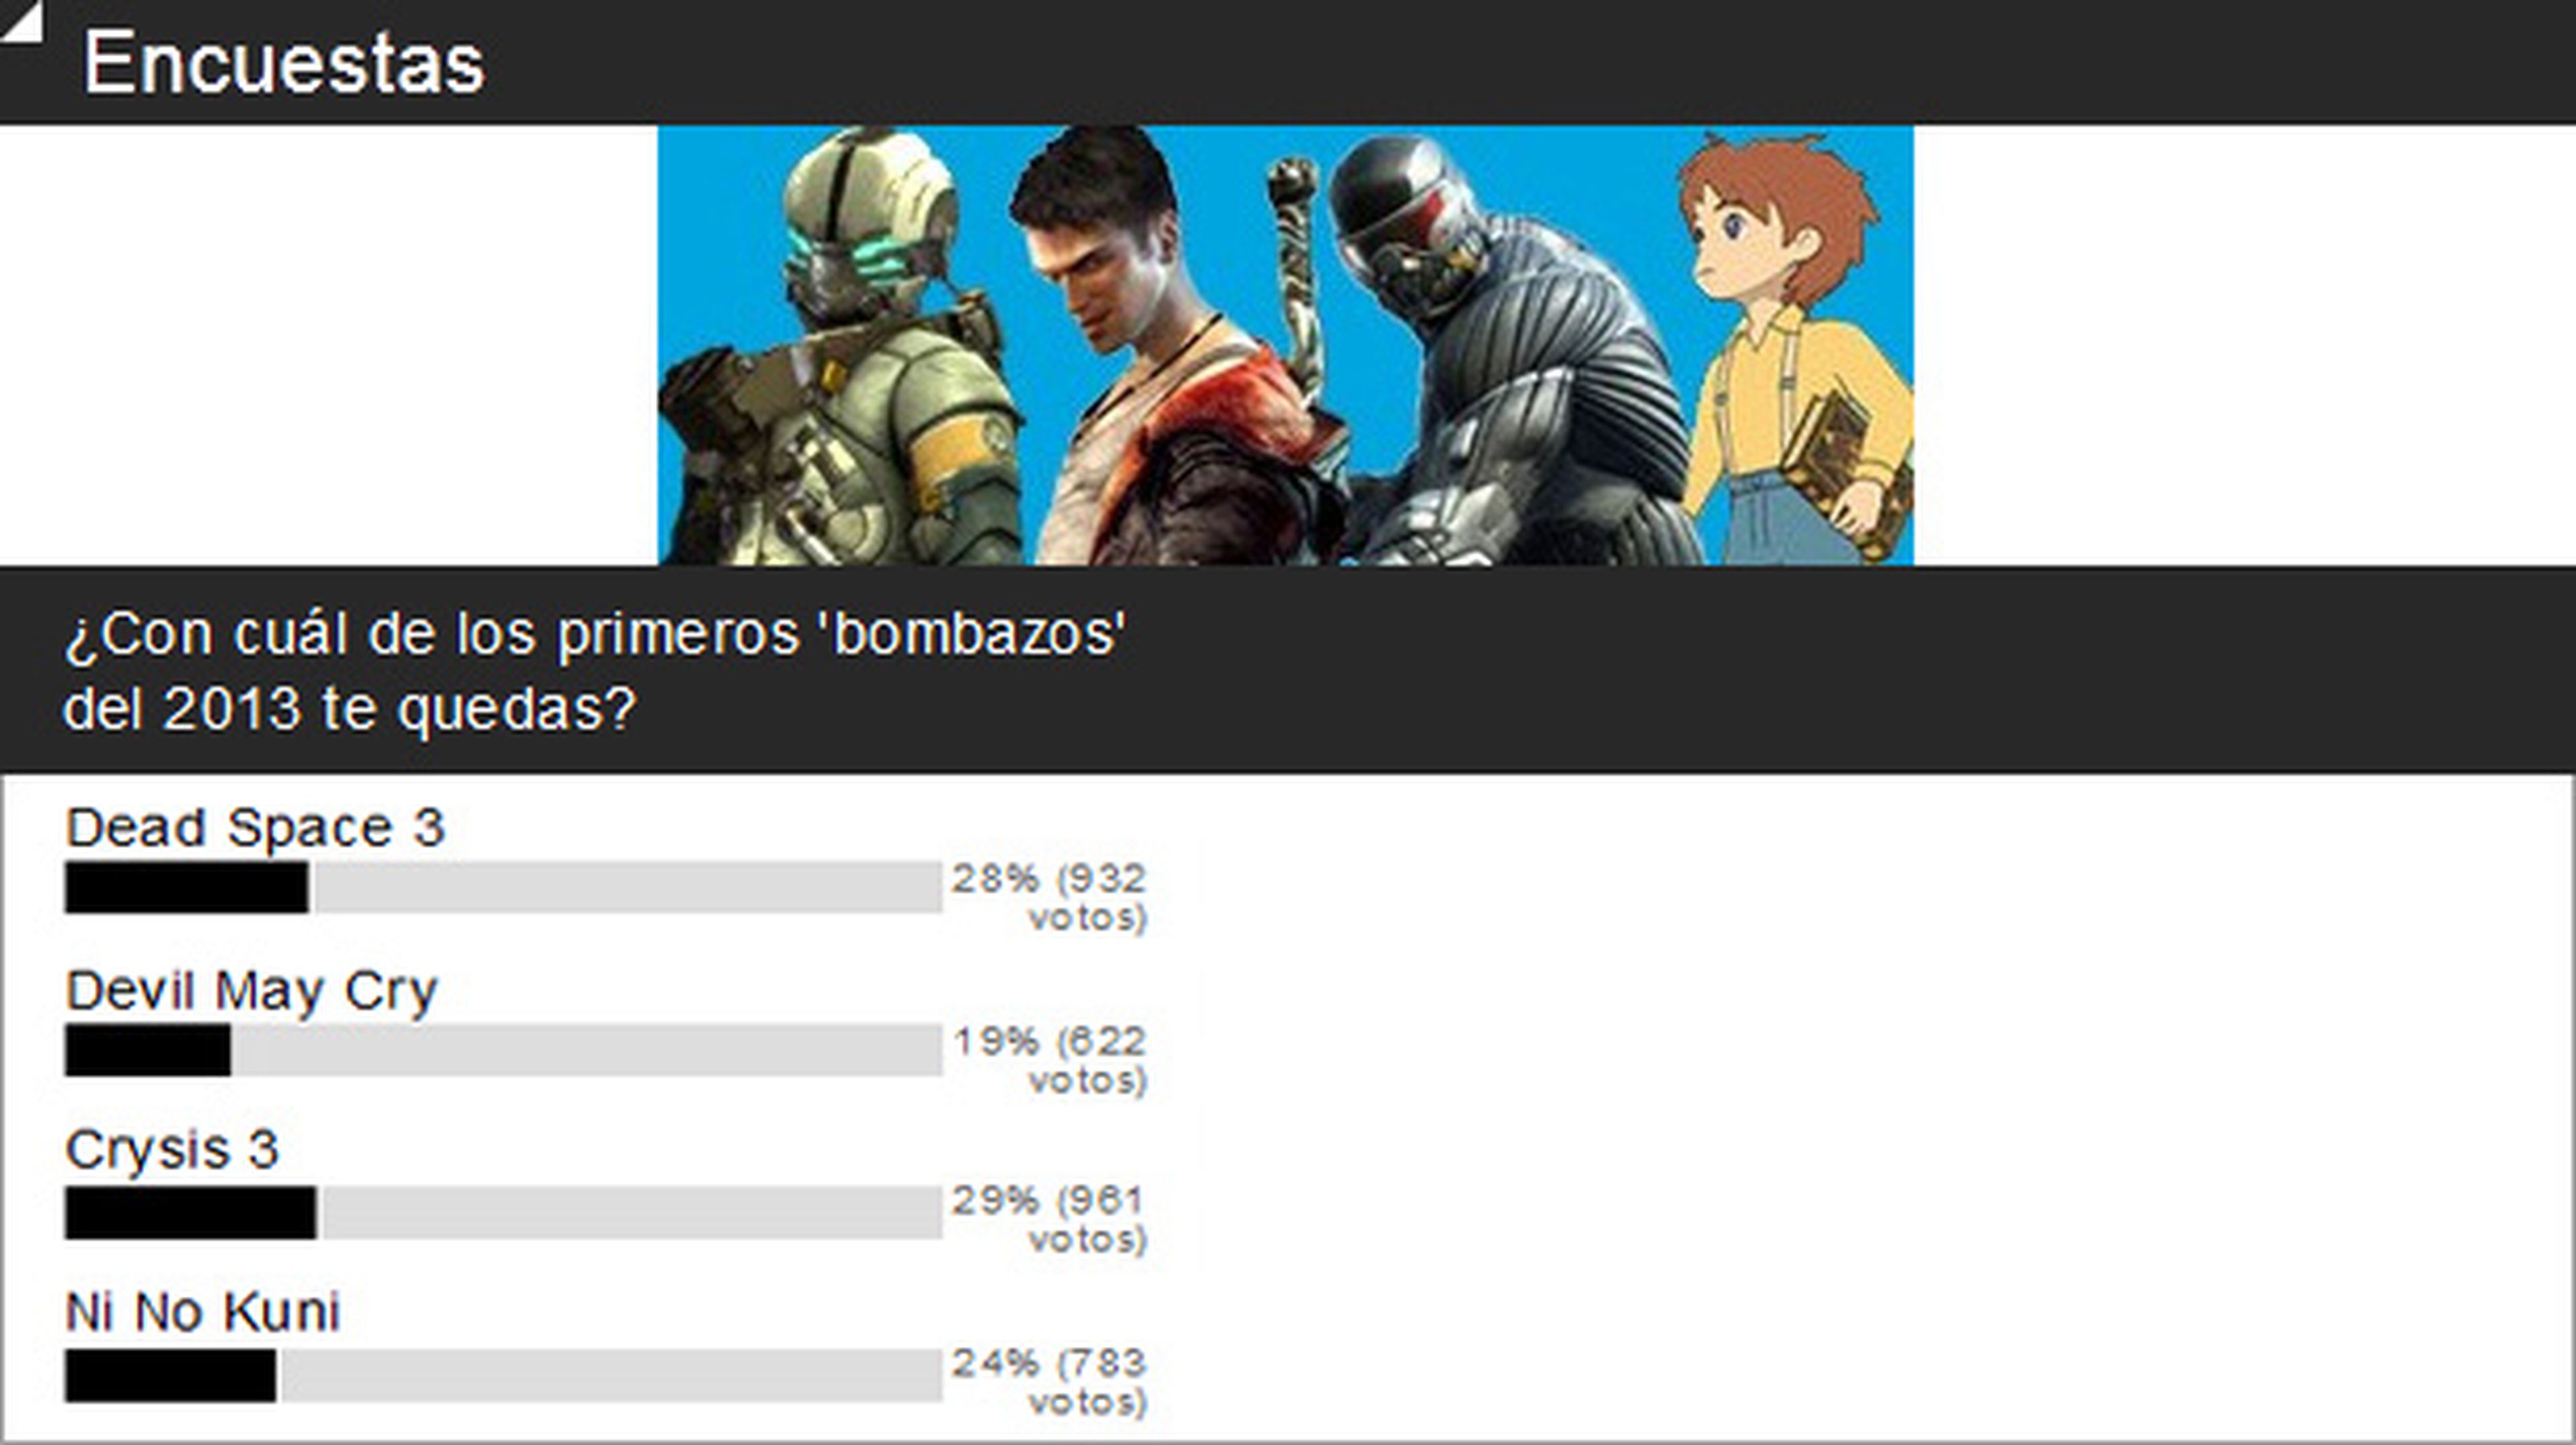 Encuesta: Crysis 3 es el favorito para empezar el año